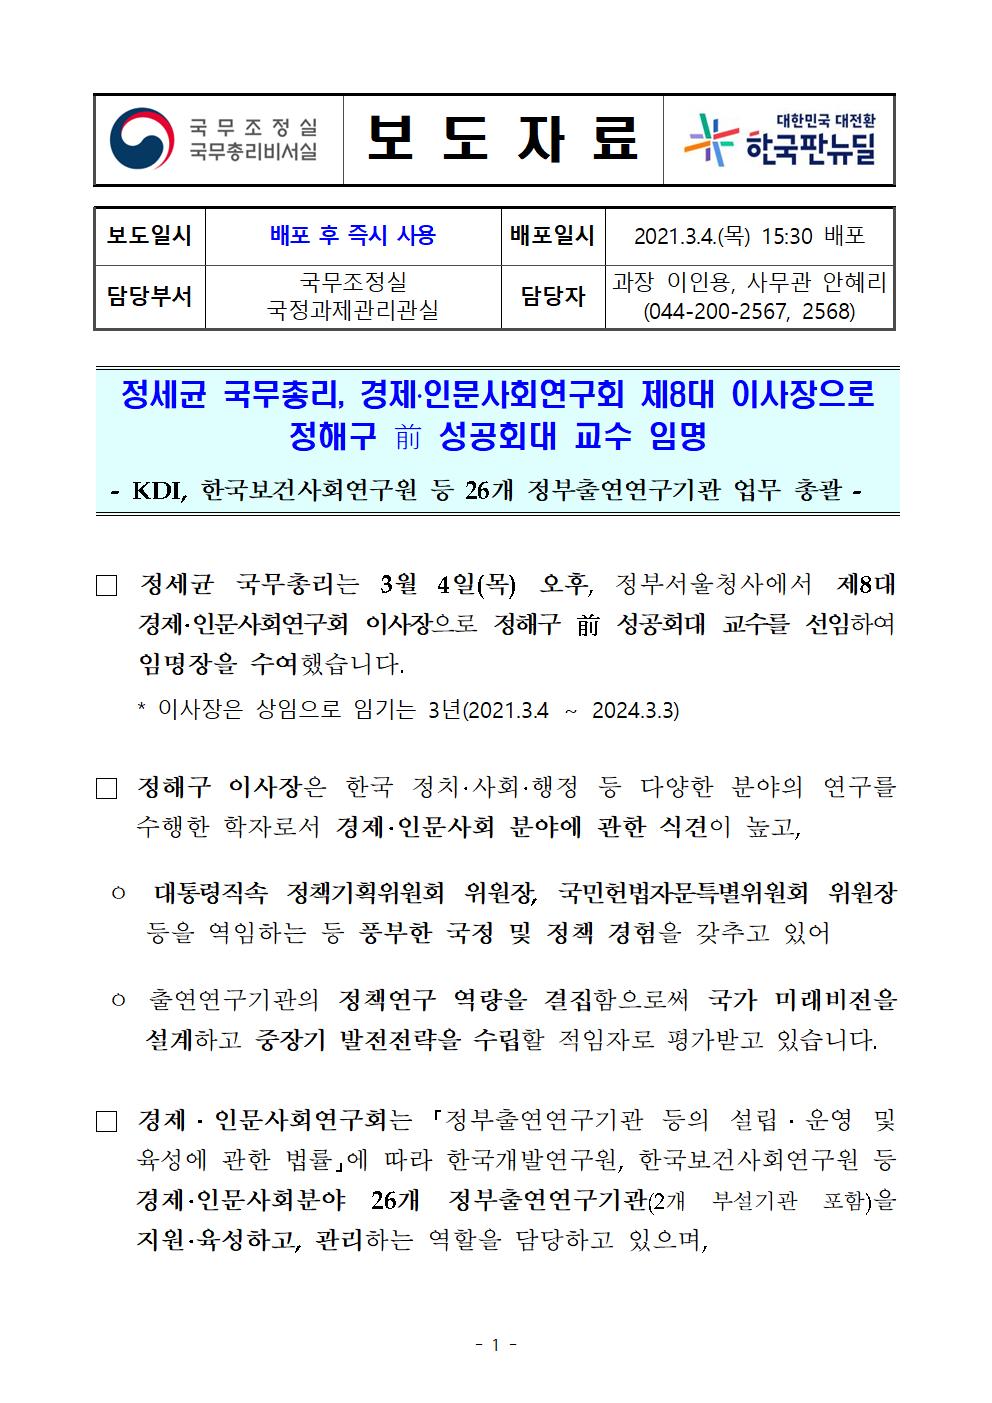 첨부파일참고 : 경제인문사회연구회 이사장 임명장 수여식 (최종, 배포).hwp